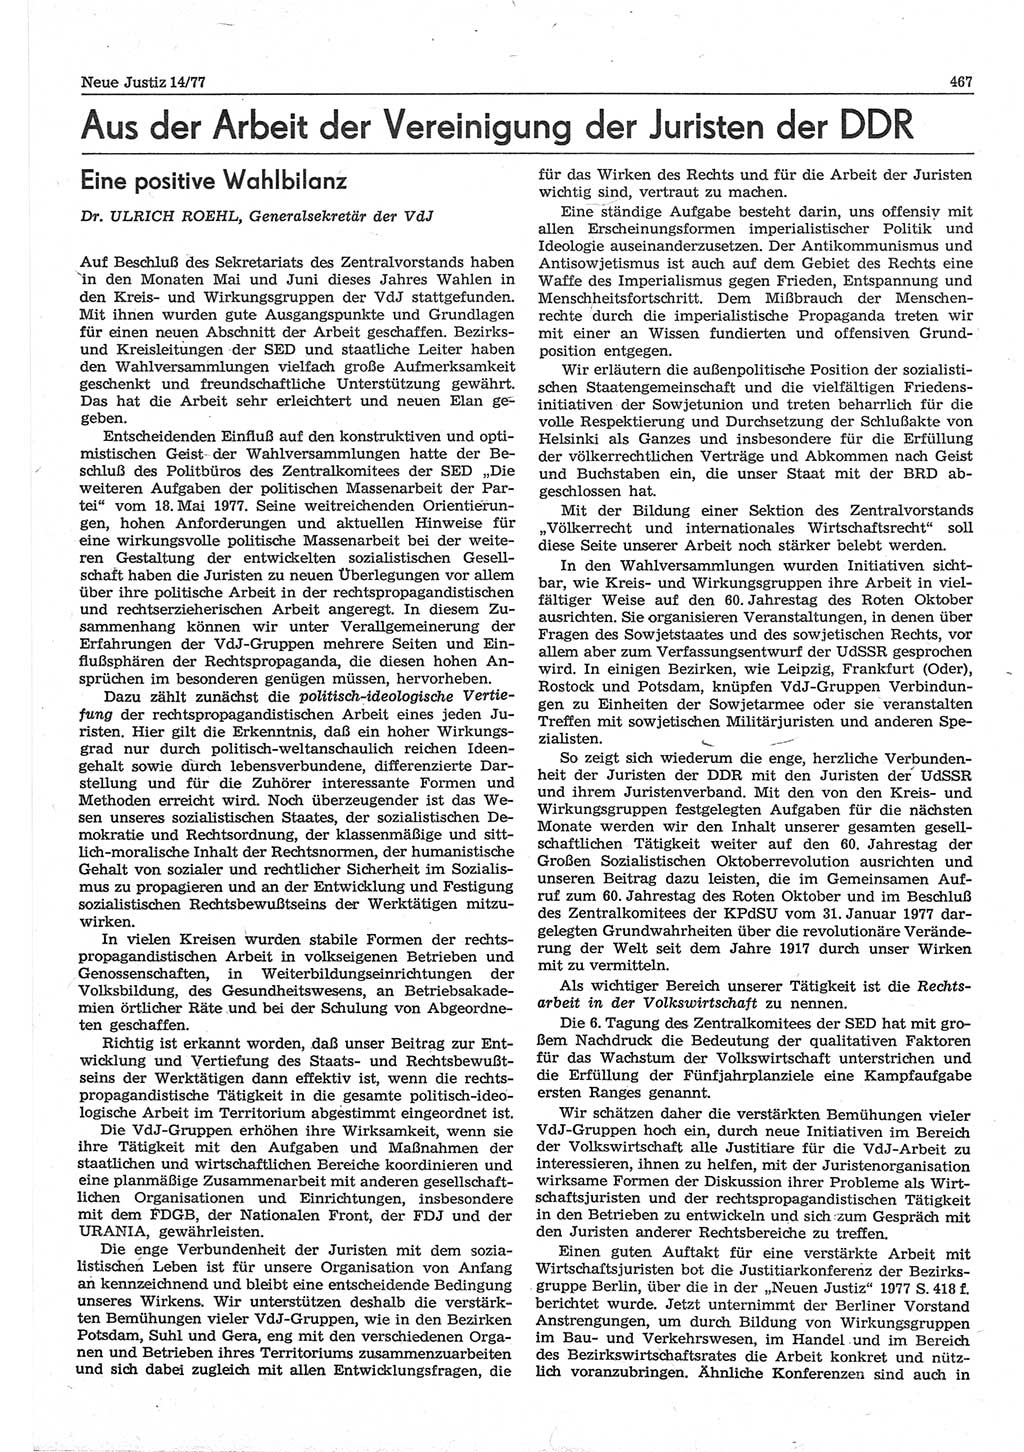 Neue Justiz (NJ), Zeitschrift für Recht und Rechtswissenschaft-Zeitschrift, sozialistisches Recht und Gesetzlichkeit, 31. Jahrgang 1977, Seite 467 (NJ DDR 1977, S. 467)